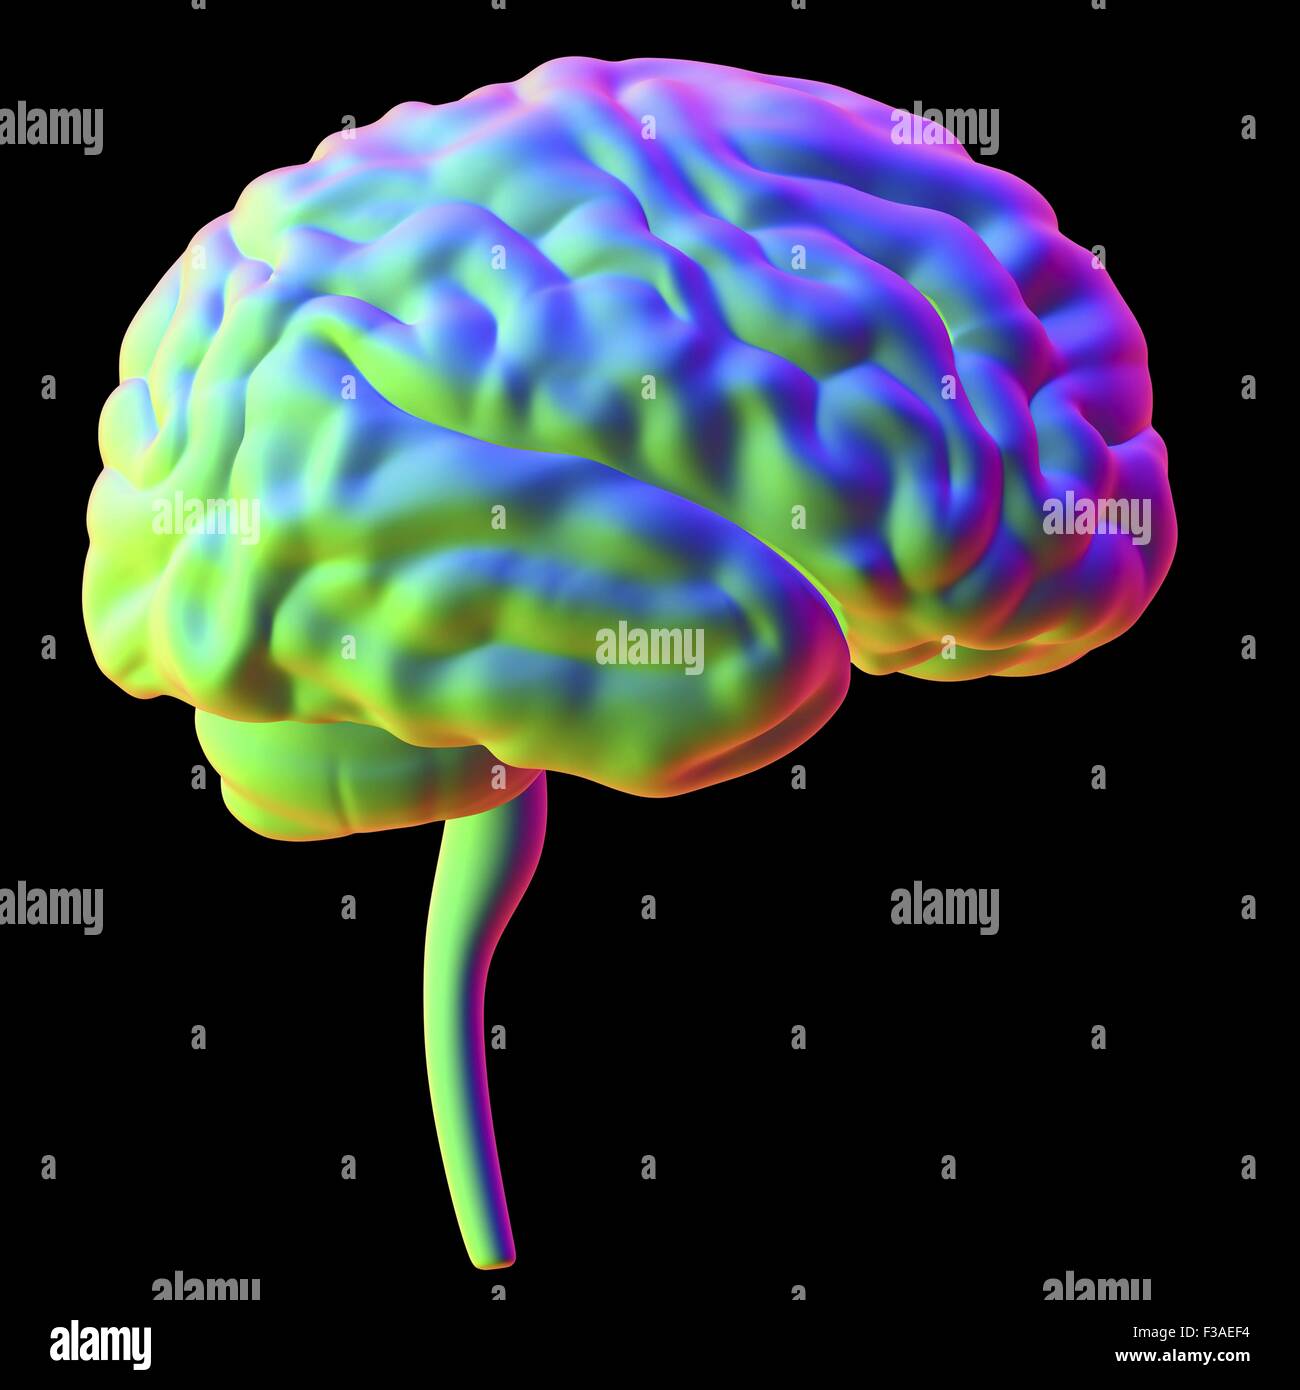 Computer illustrazione del cervello umano, visto dal lato. Foto Stock